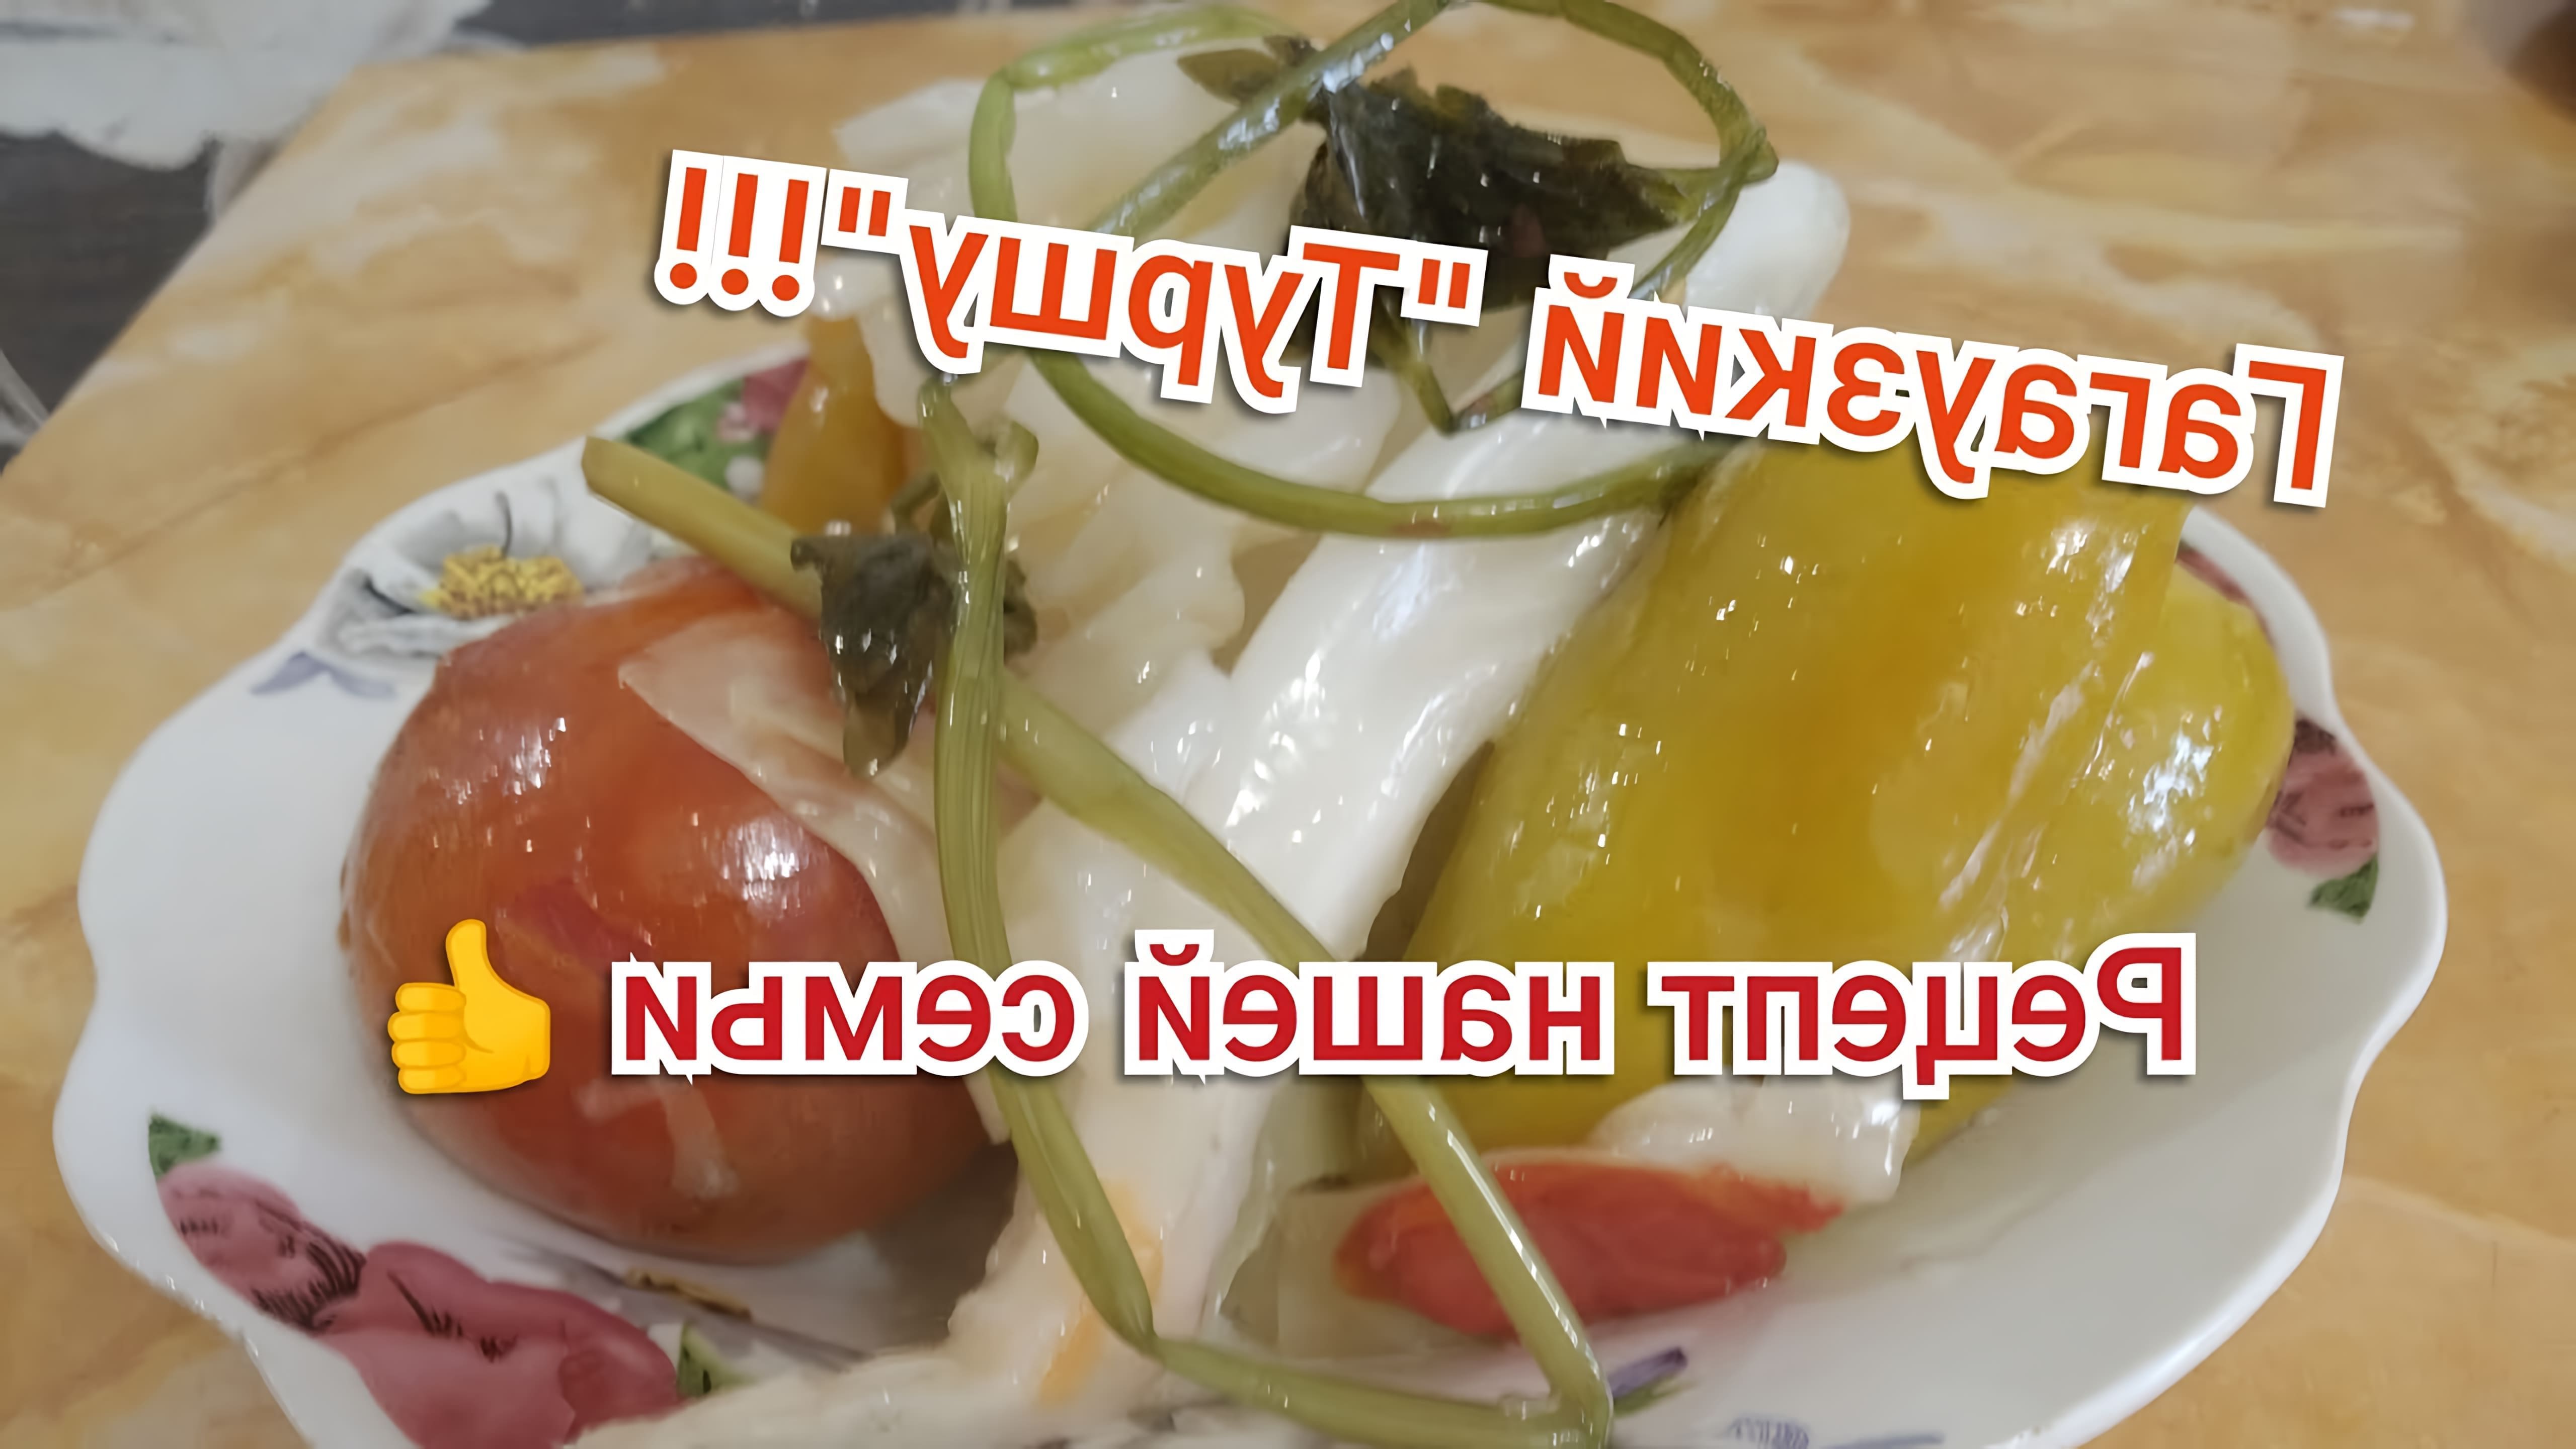 В этом видео демонстрируется процесс приготовления гагаузского "Туршу" - квашеных овощей в бочке